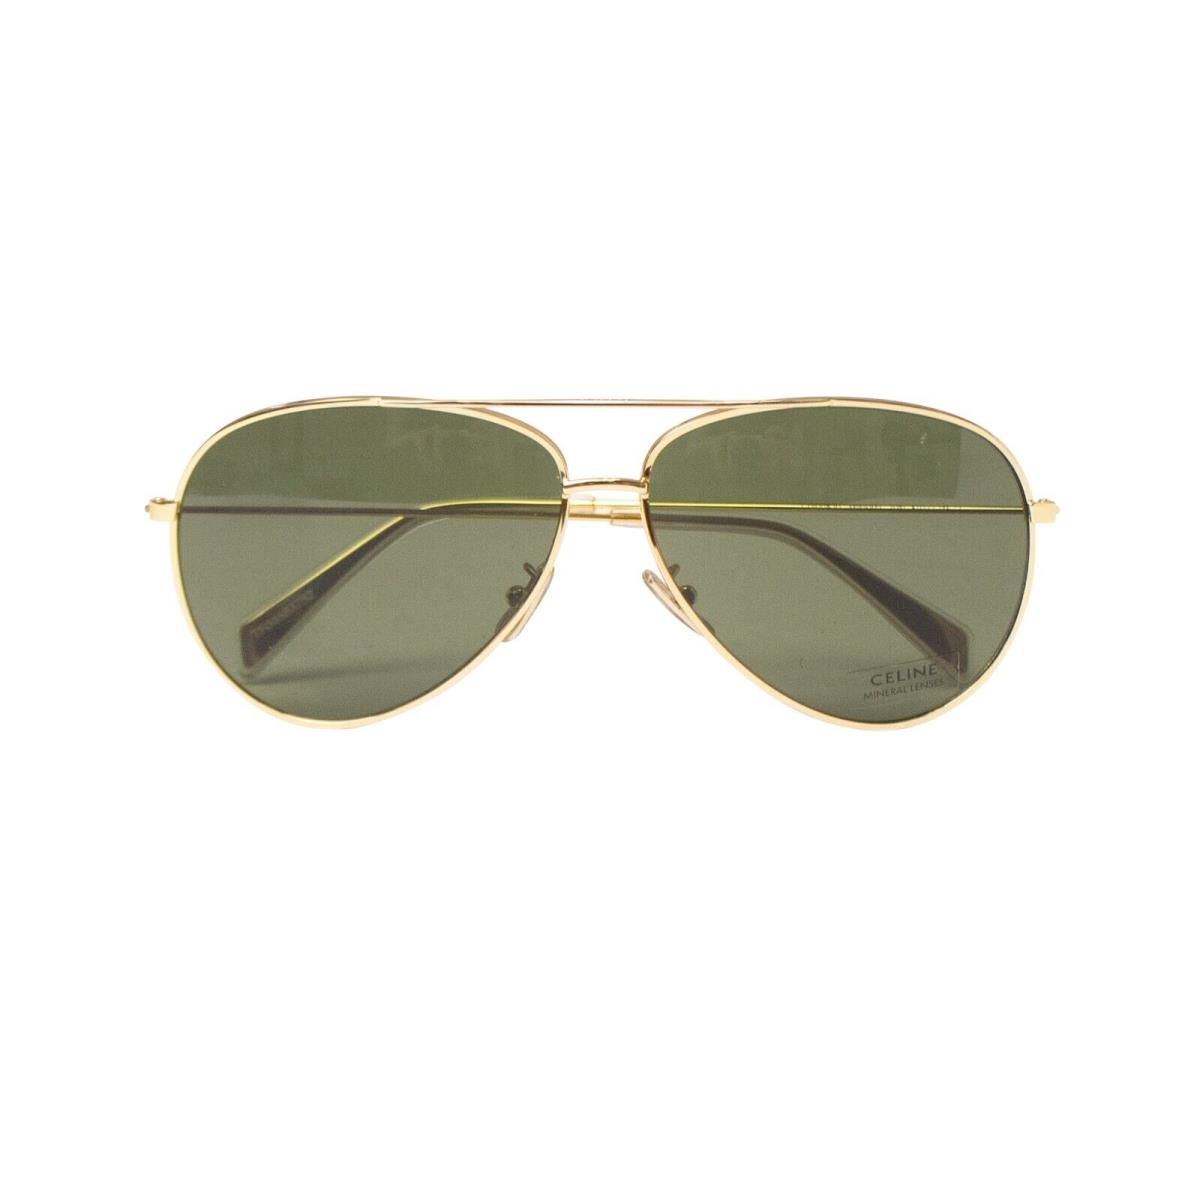 Celine Gold Green Metal Frame Sunglasses Size OS